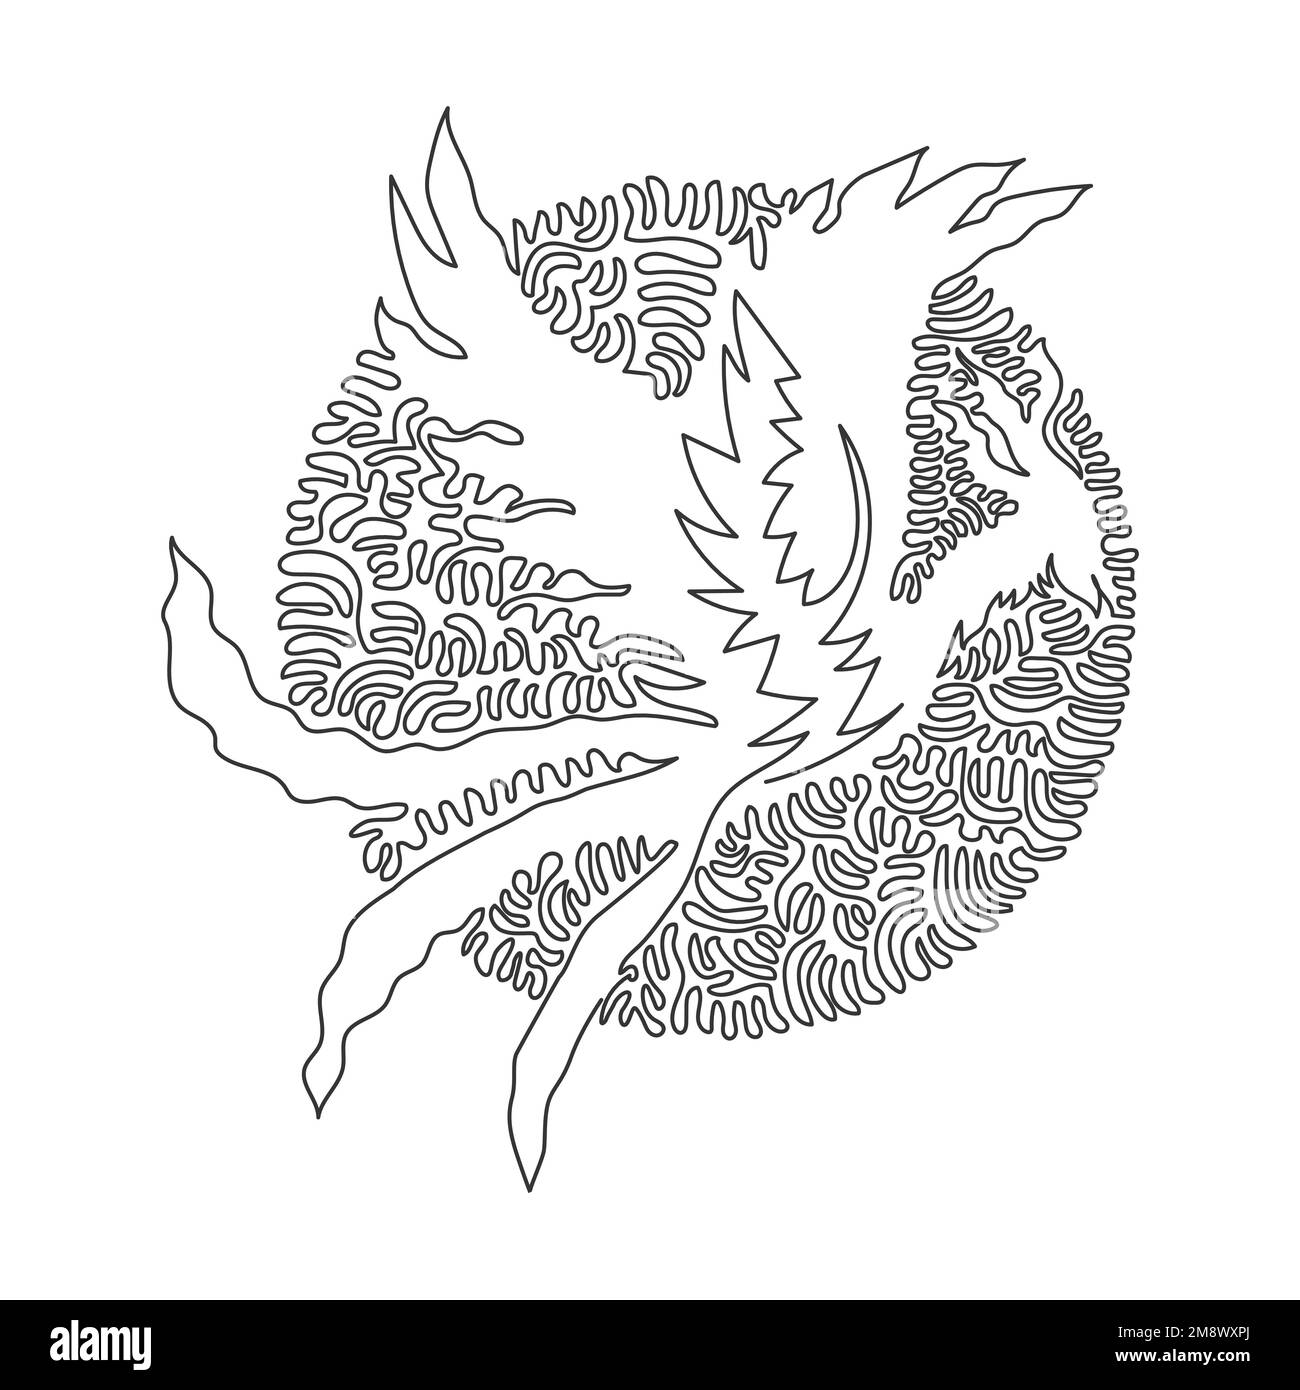 Dessin continu d'une ligne courbe d'un adorable phoenix art abstrait en cercle. Illustration d'un vecteur de trait modifiable à une seule ligne d'un ancien oiseau mythique Illustration de Vecteur